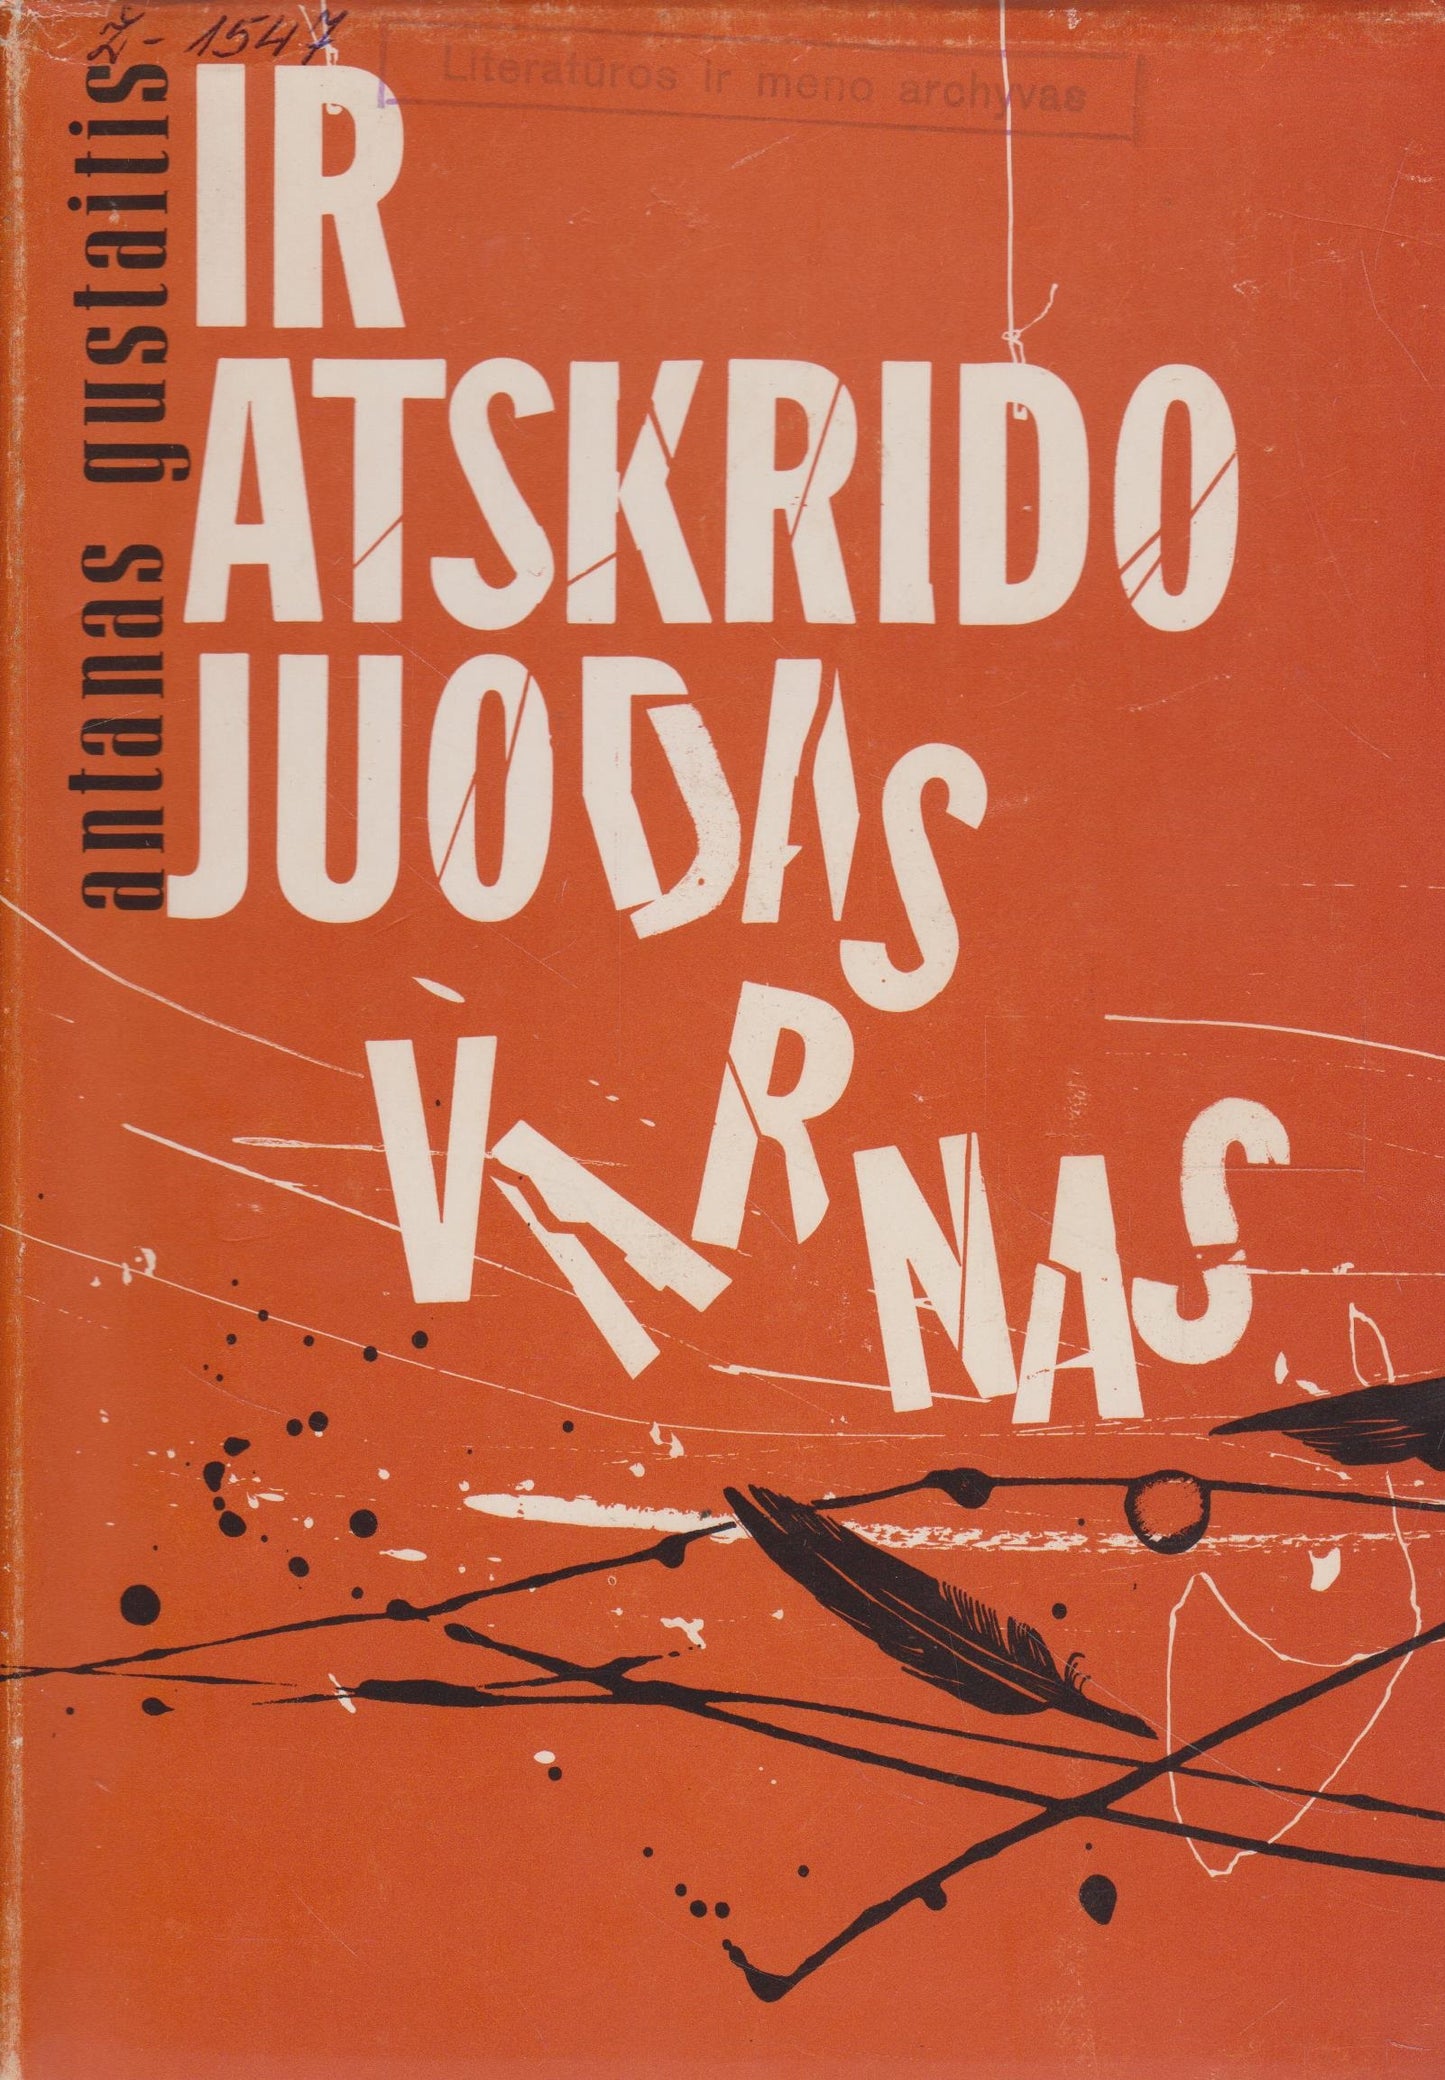 Antanas Gustaitis -  Ir atskrido juodas varnas, 1966, Chicago